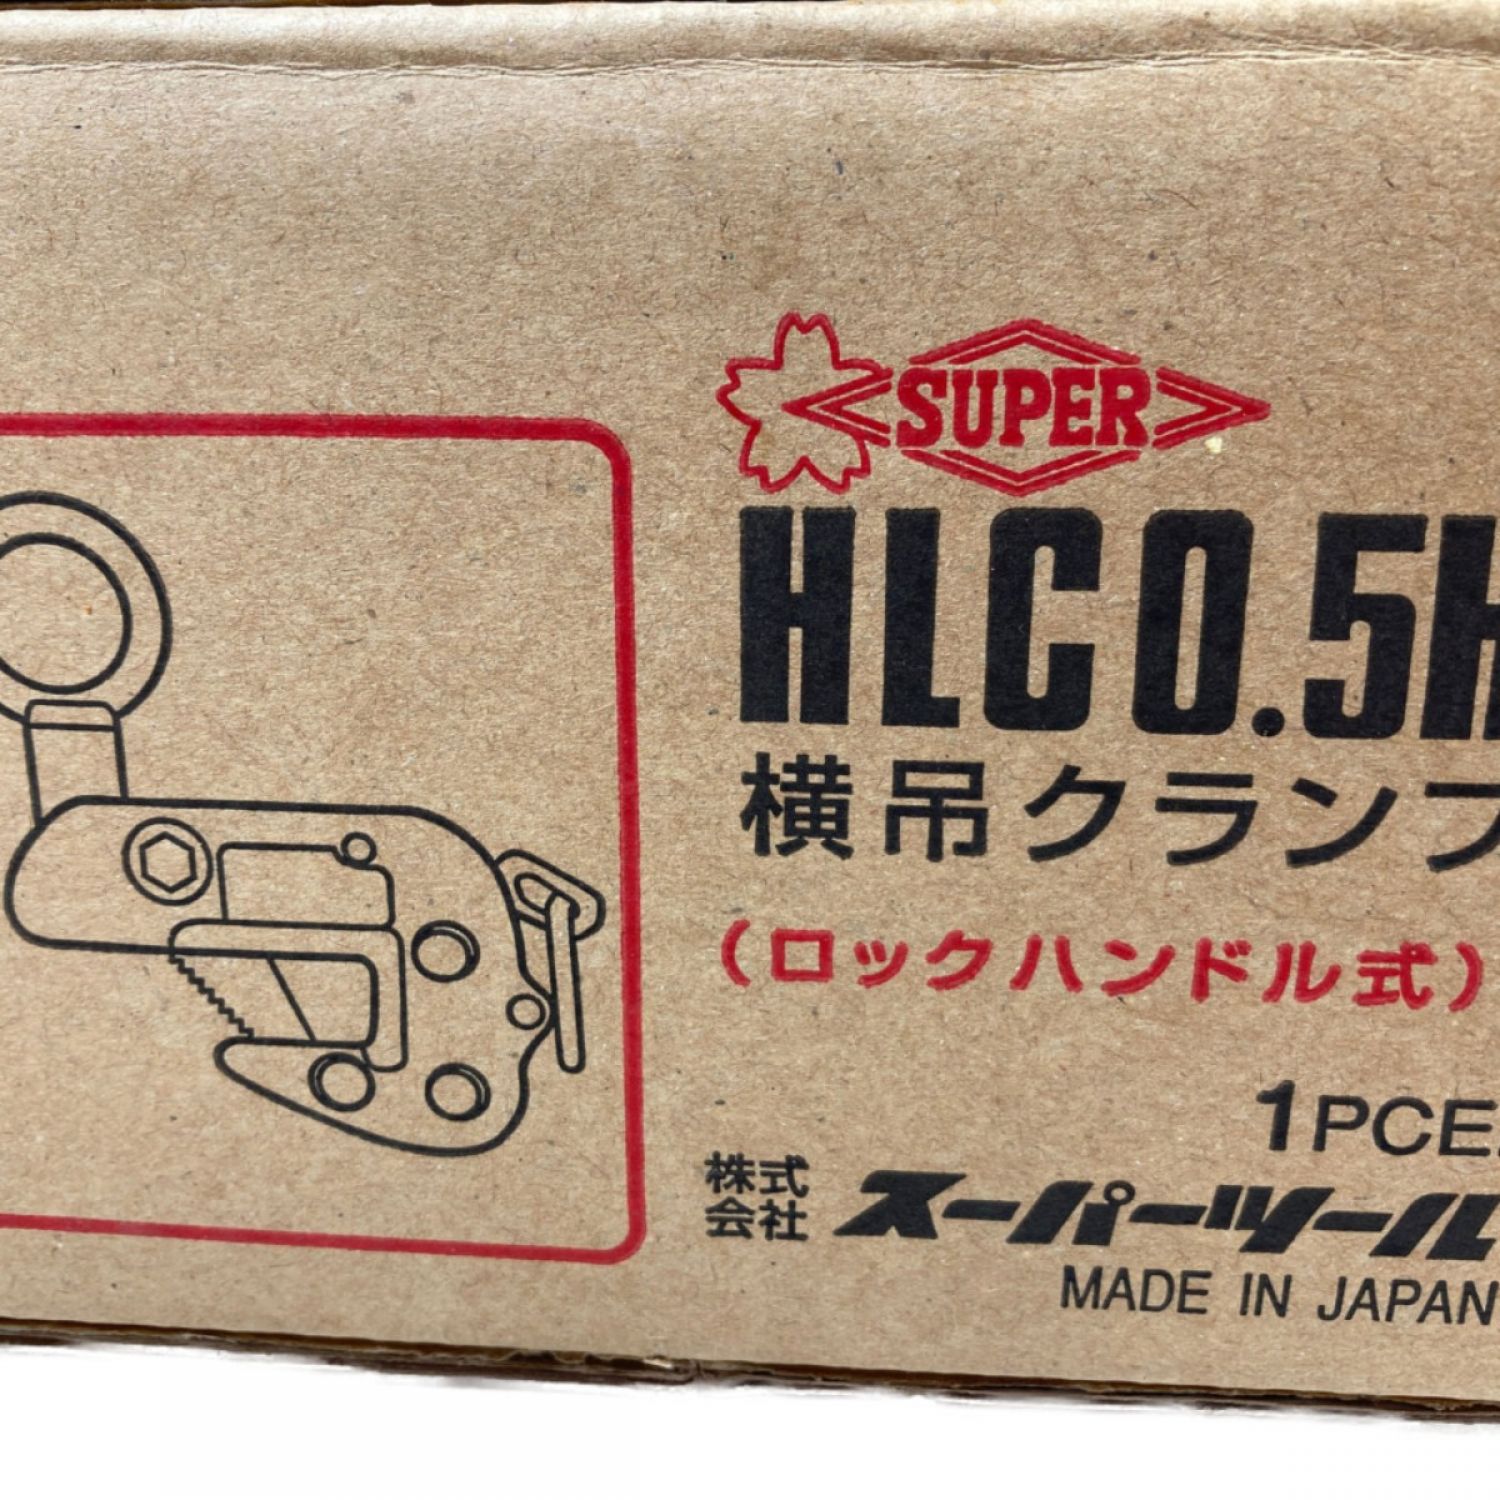 キャンペーン スーパーツール 横吊りクランプ（ハンドル式） HLC0.5H